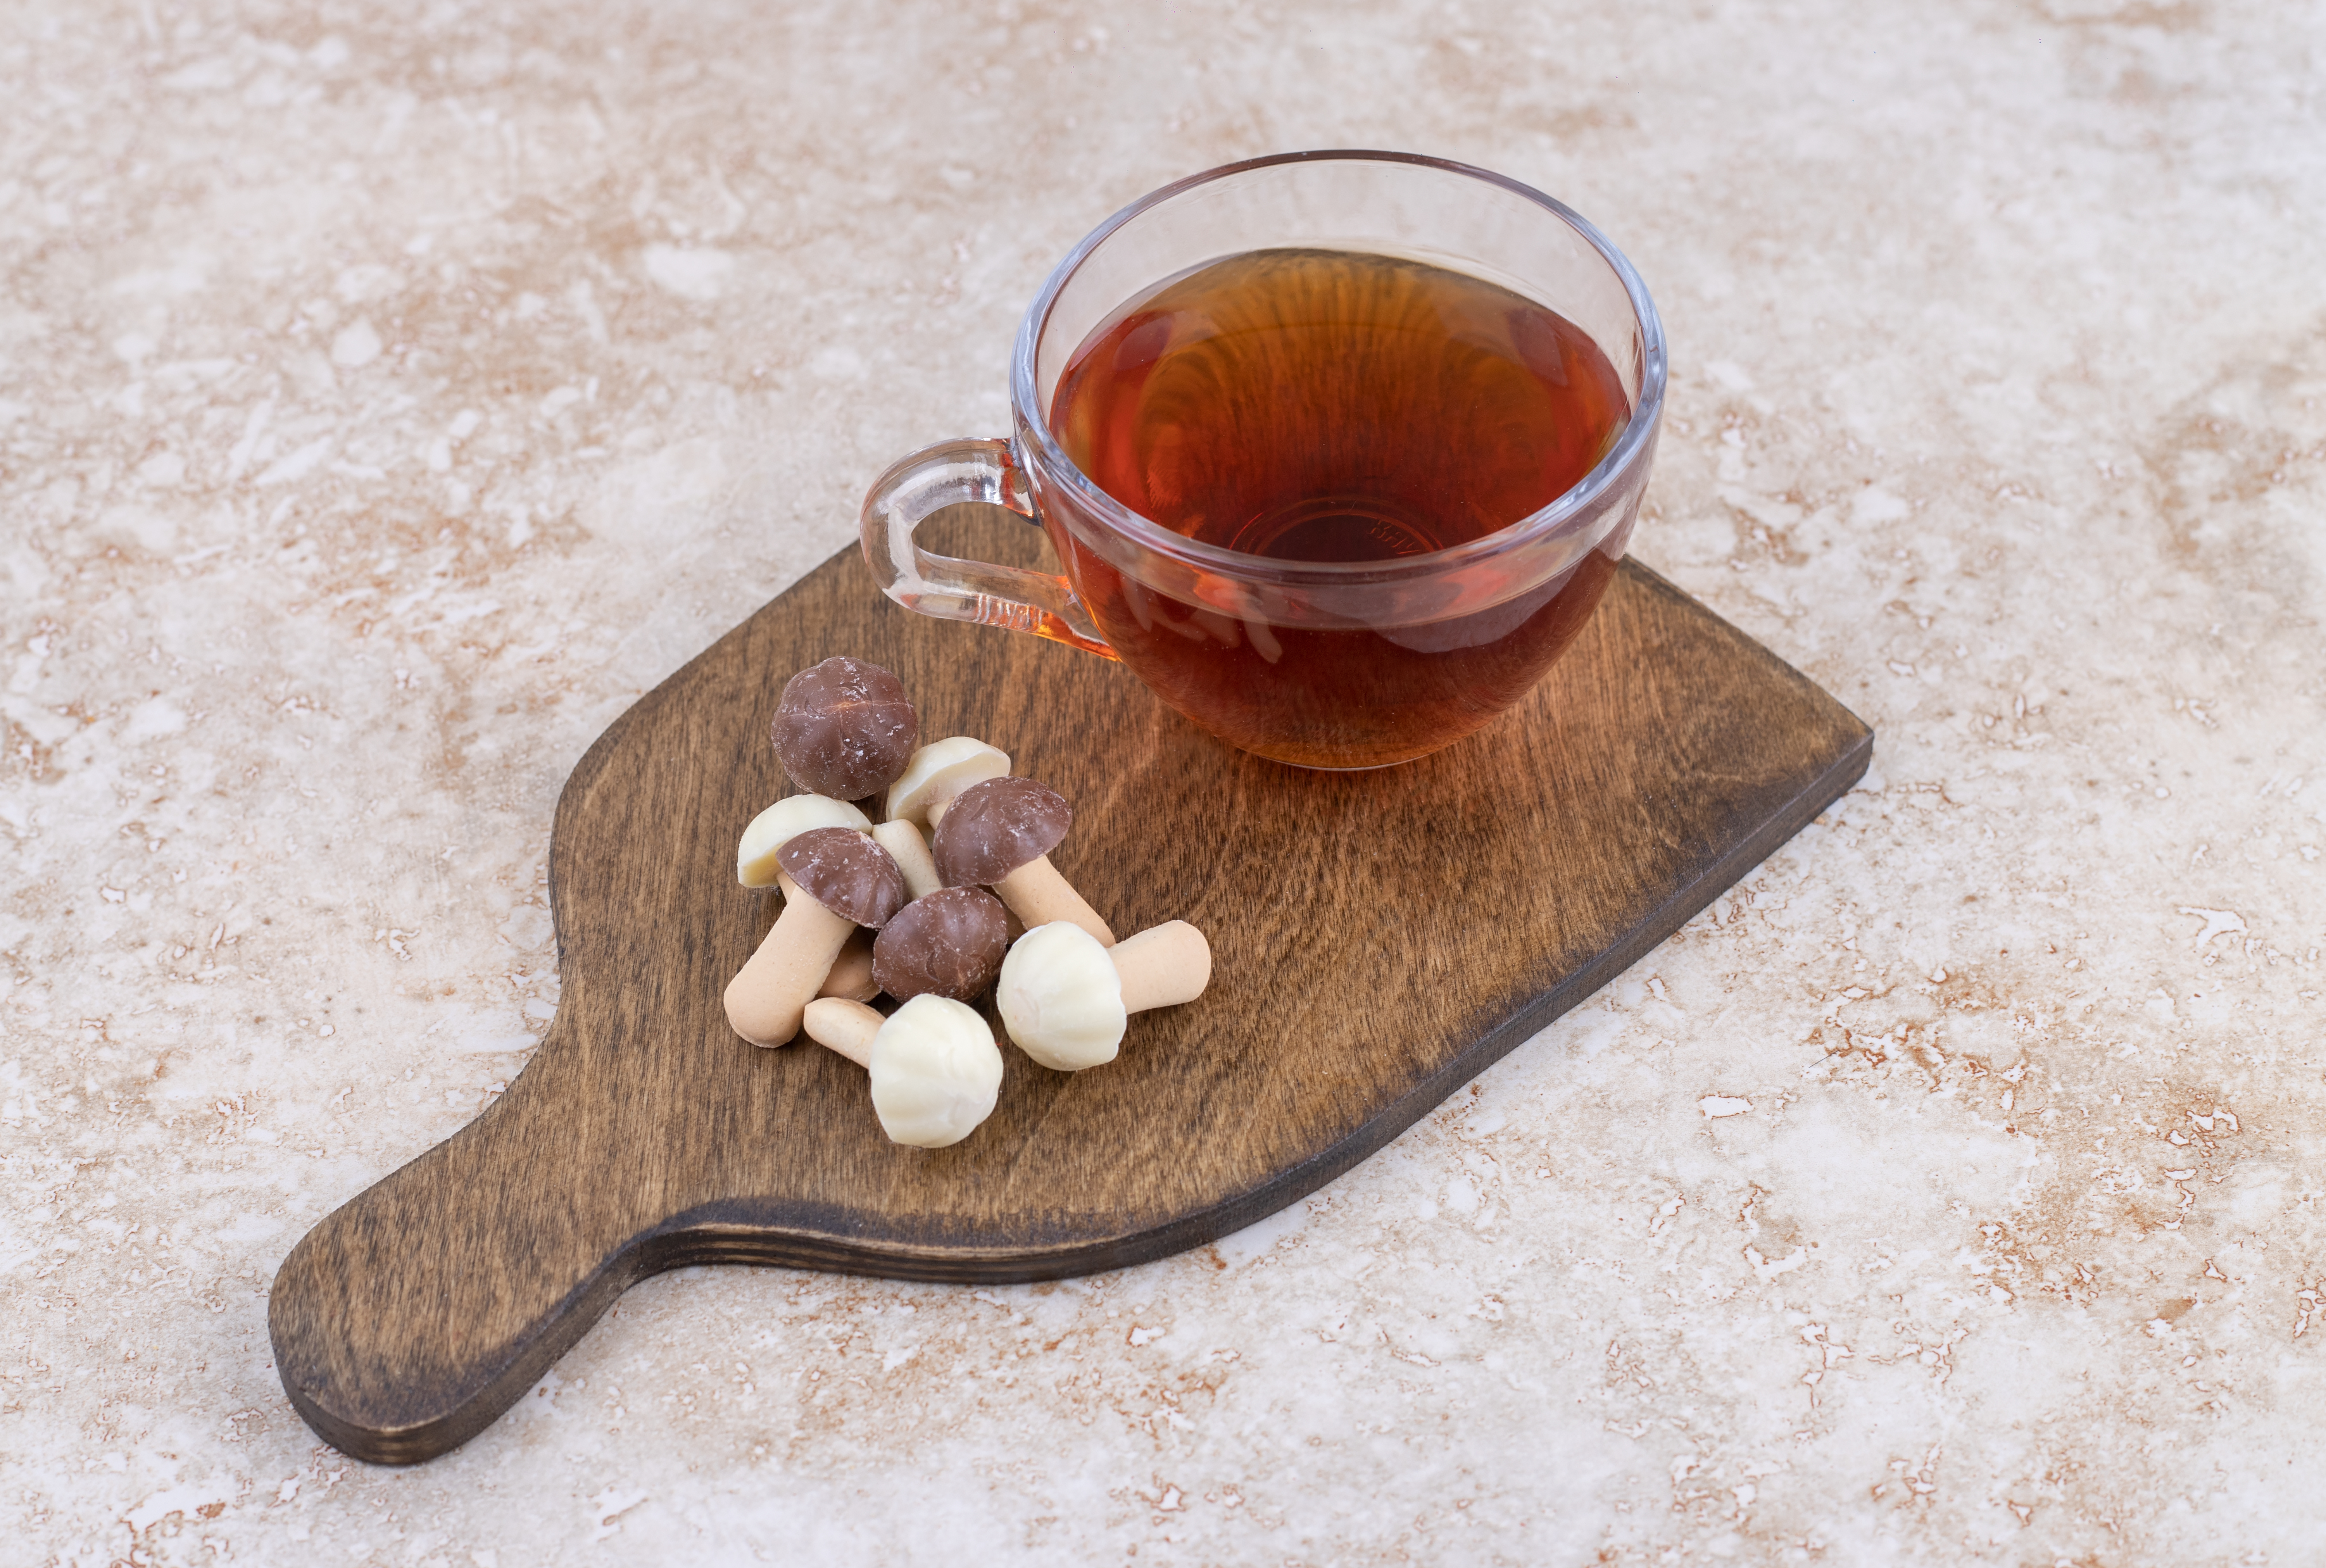 Πρέπει να αντικαταστήσεις το κλασσικό τσάι που πίνεις με τσάι από μανιτάρια;!